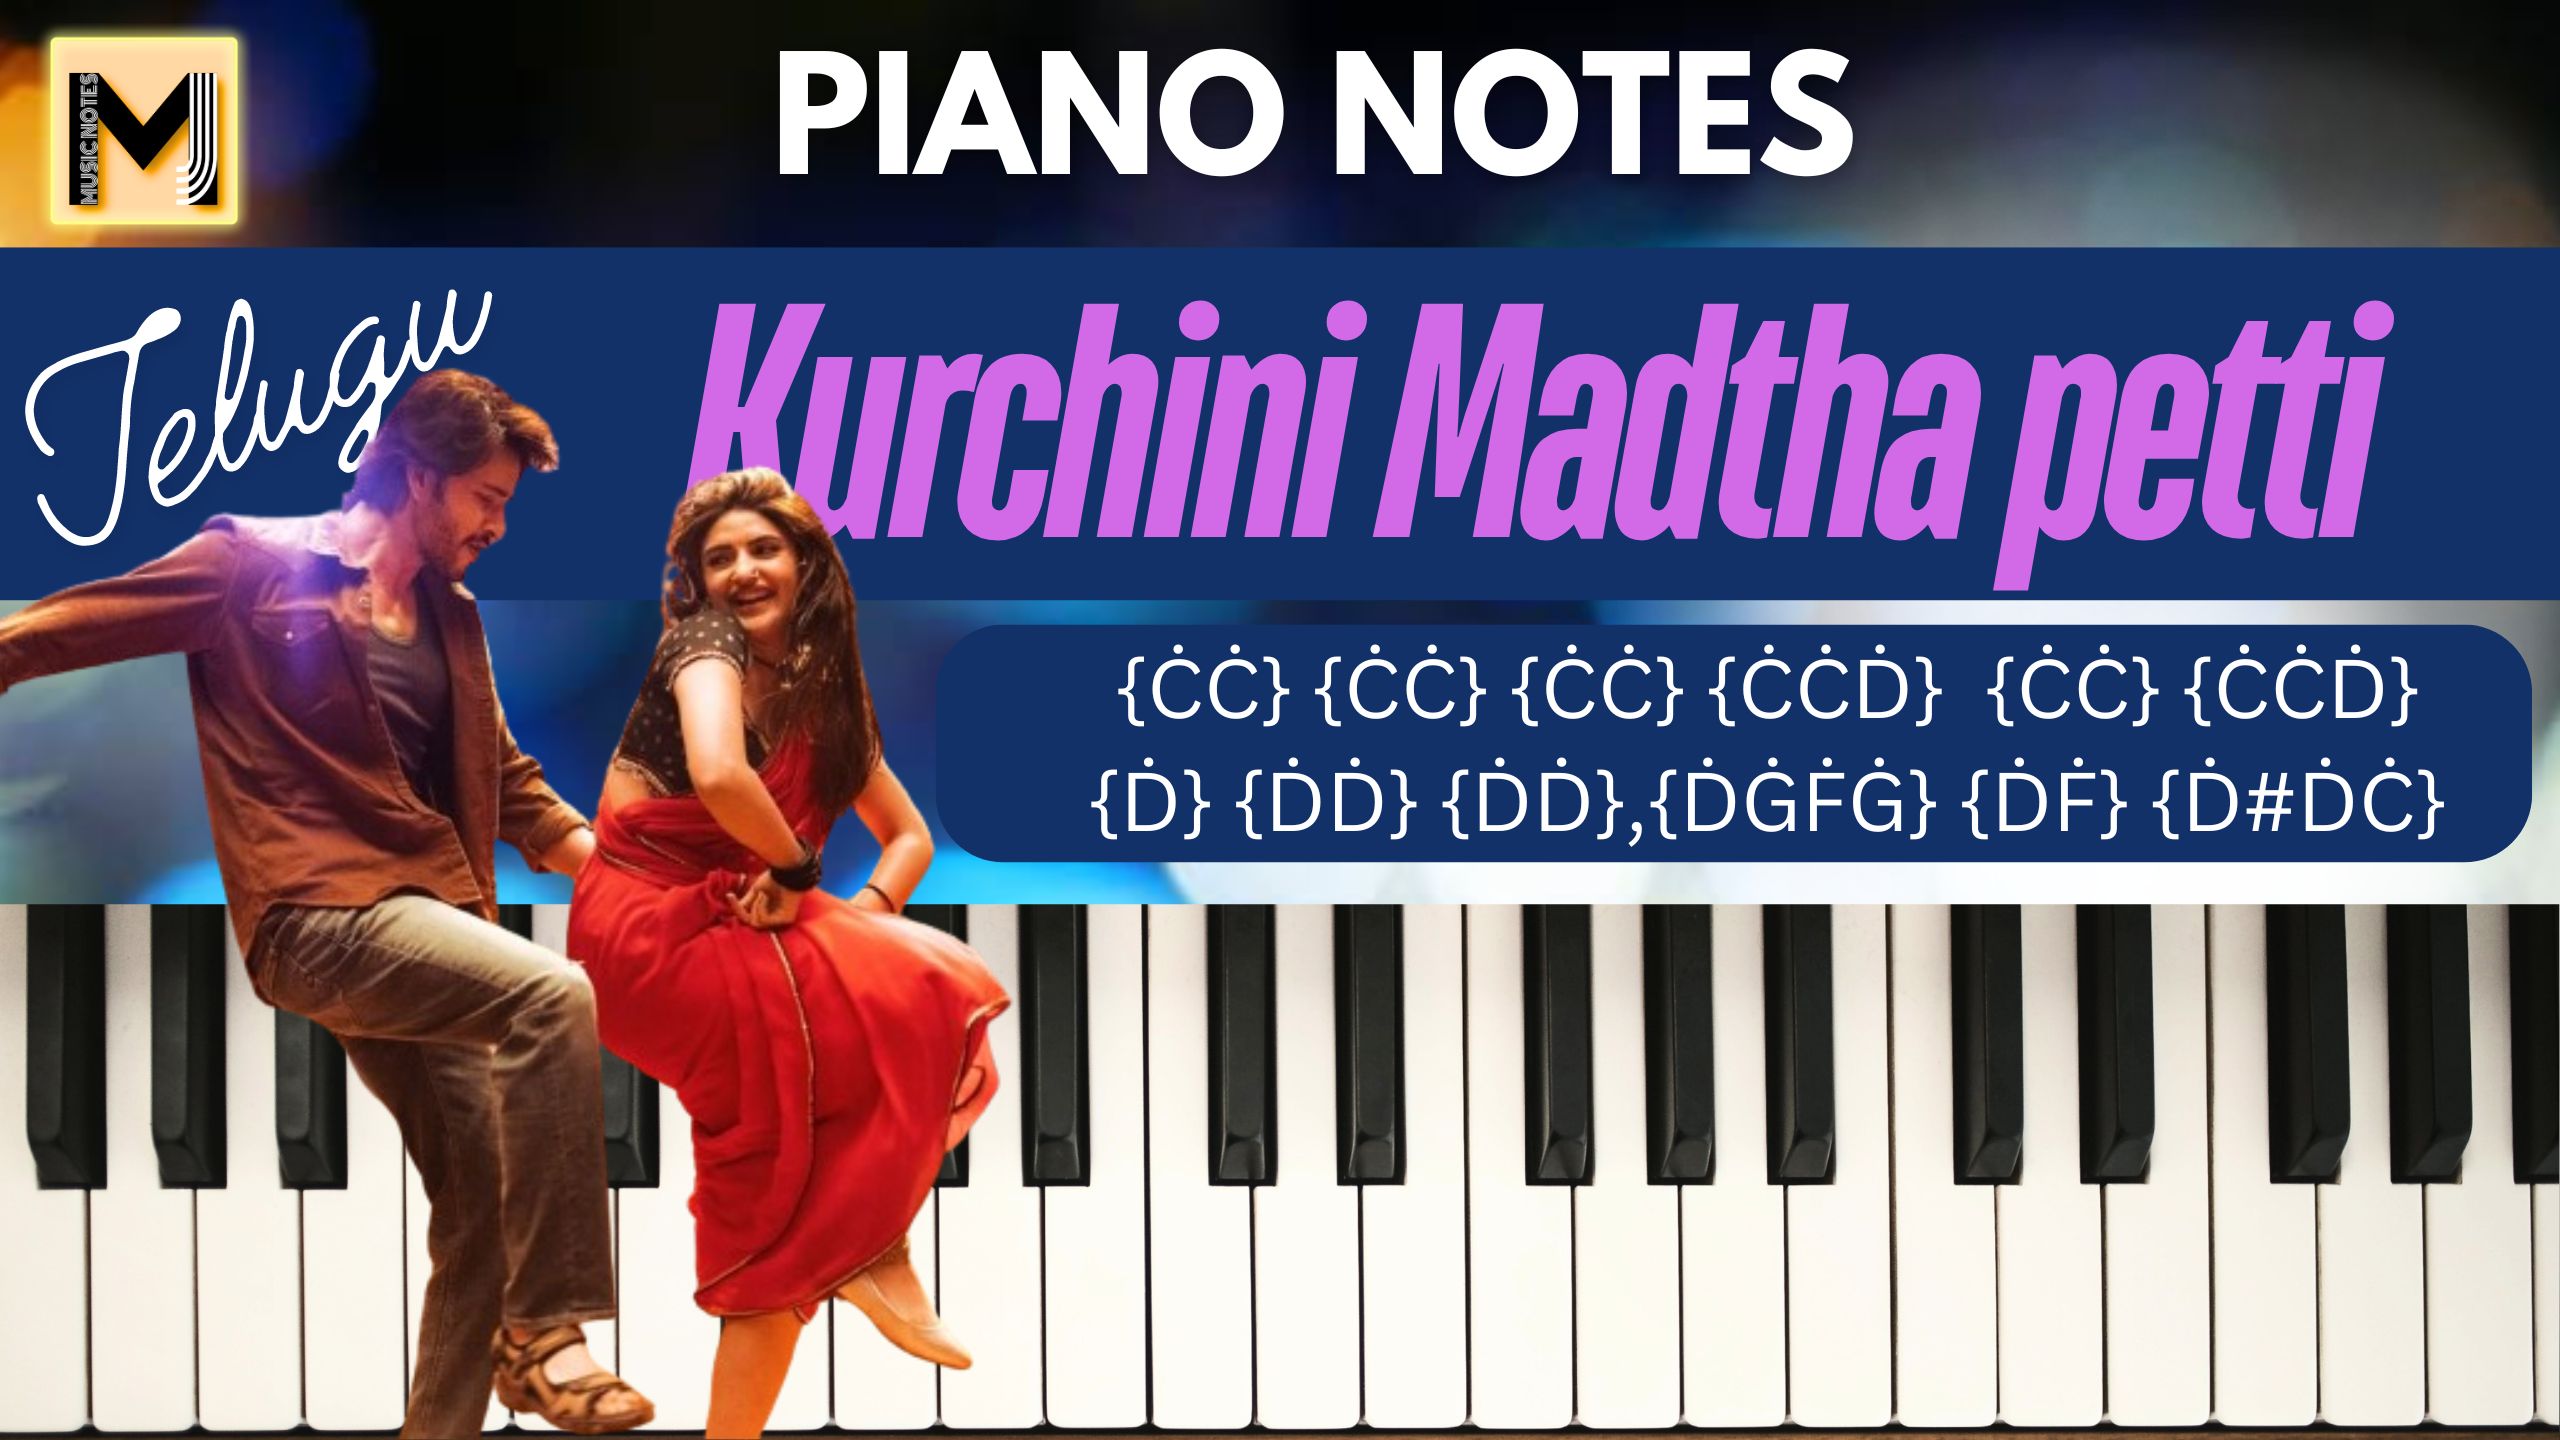 Kurchi Madatha Petti Piano notes